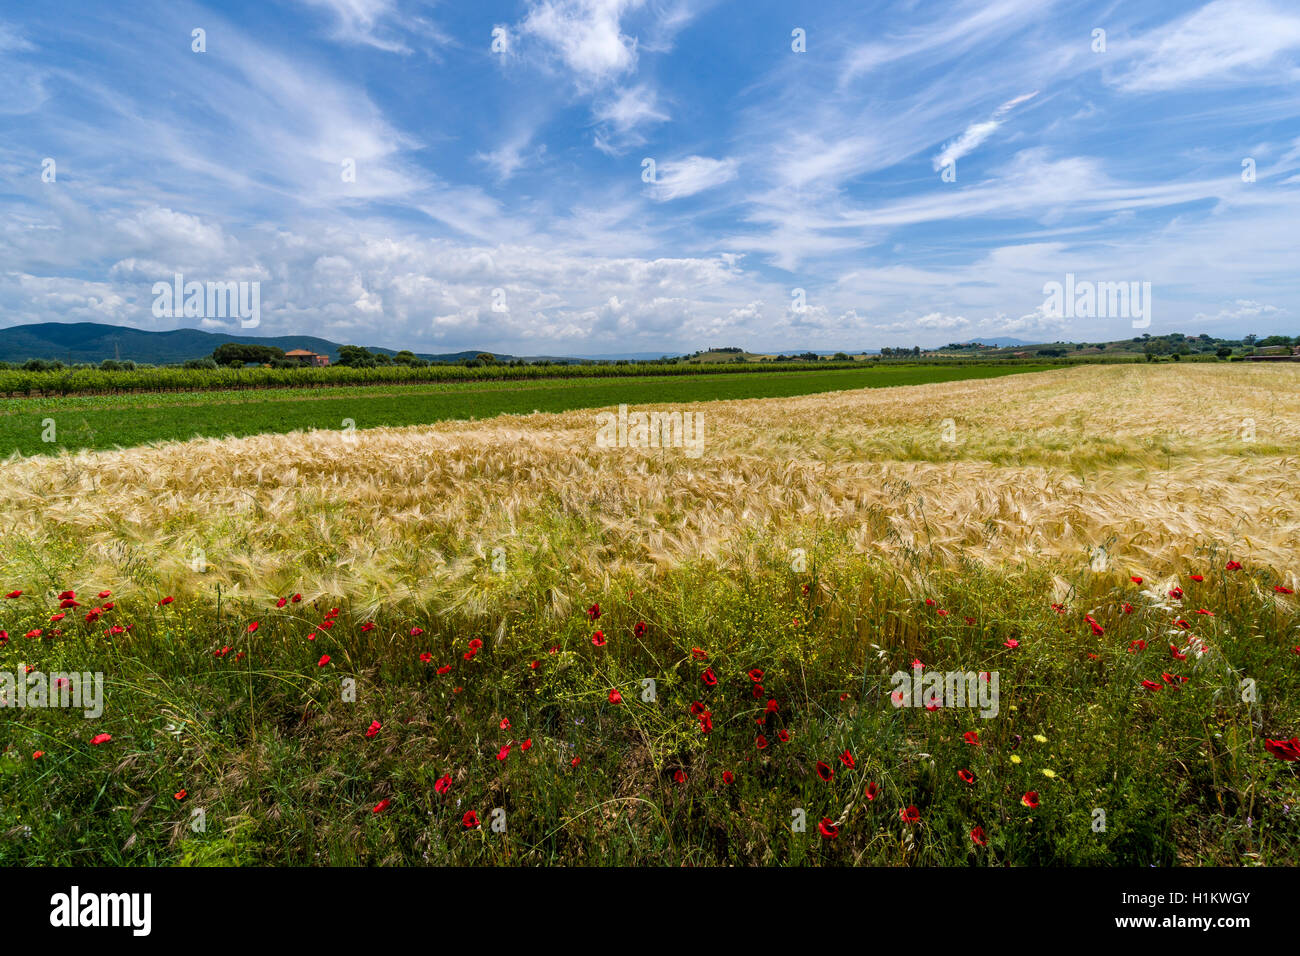 Típica Toscana verde paisaje con colinas, viñedos, amapolas, grano de campo, granja y azul, cielo nublado Foto de stock